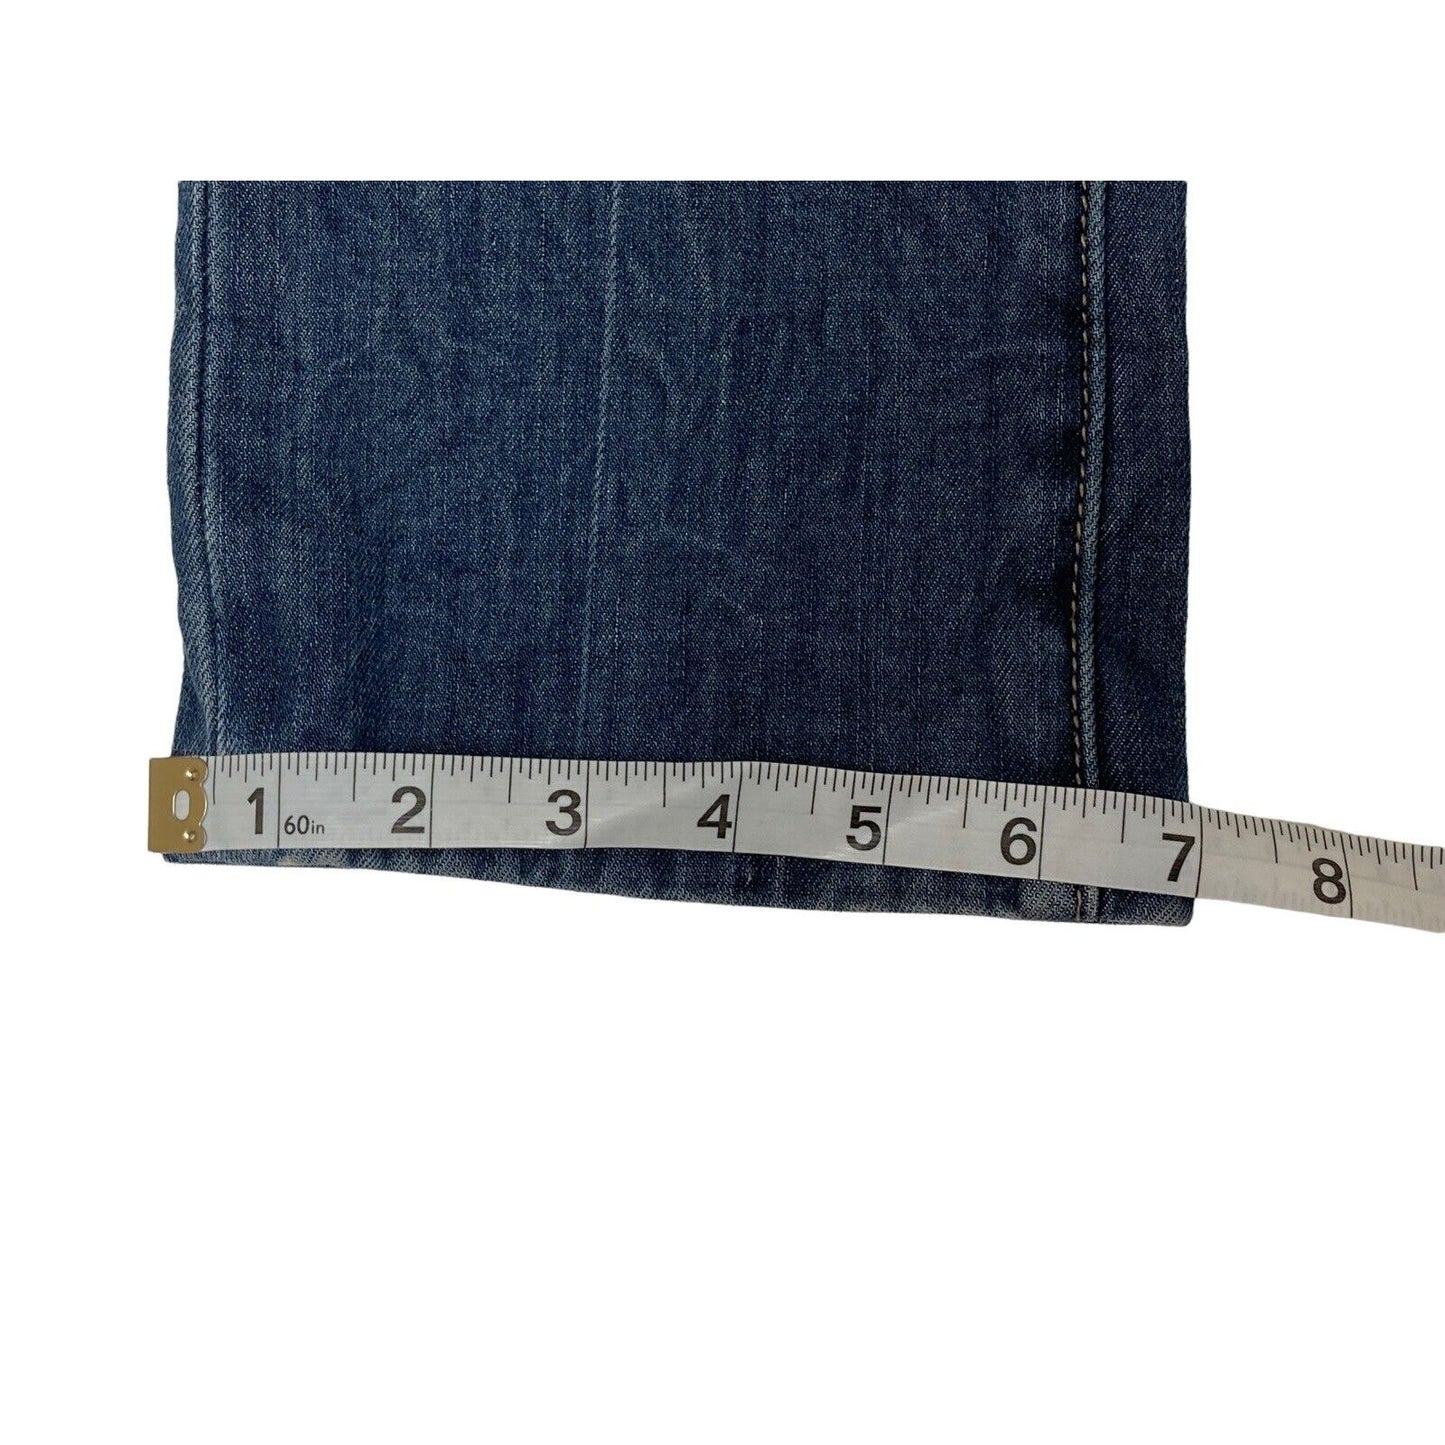 Miss Me JP45078 Capri Cropped Denim Jeans Odessa 02 Tan Cuffs Size 26